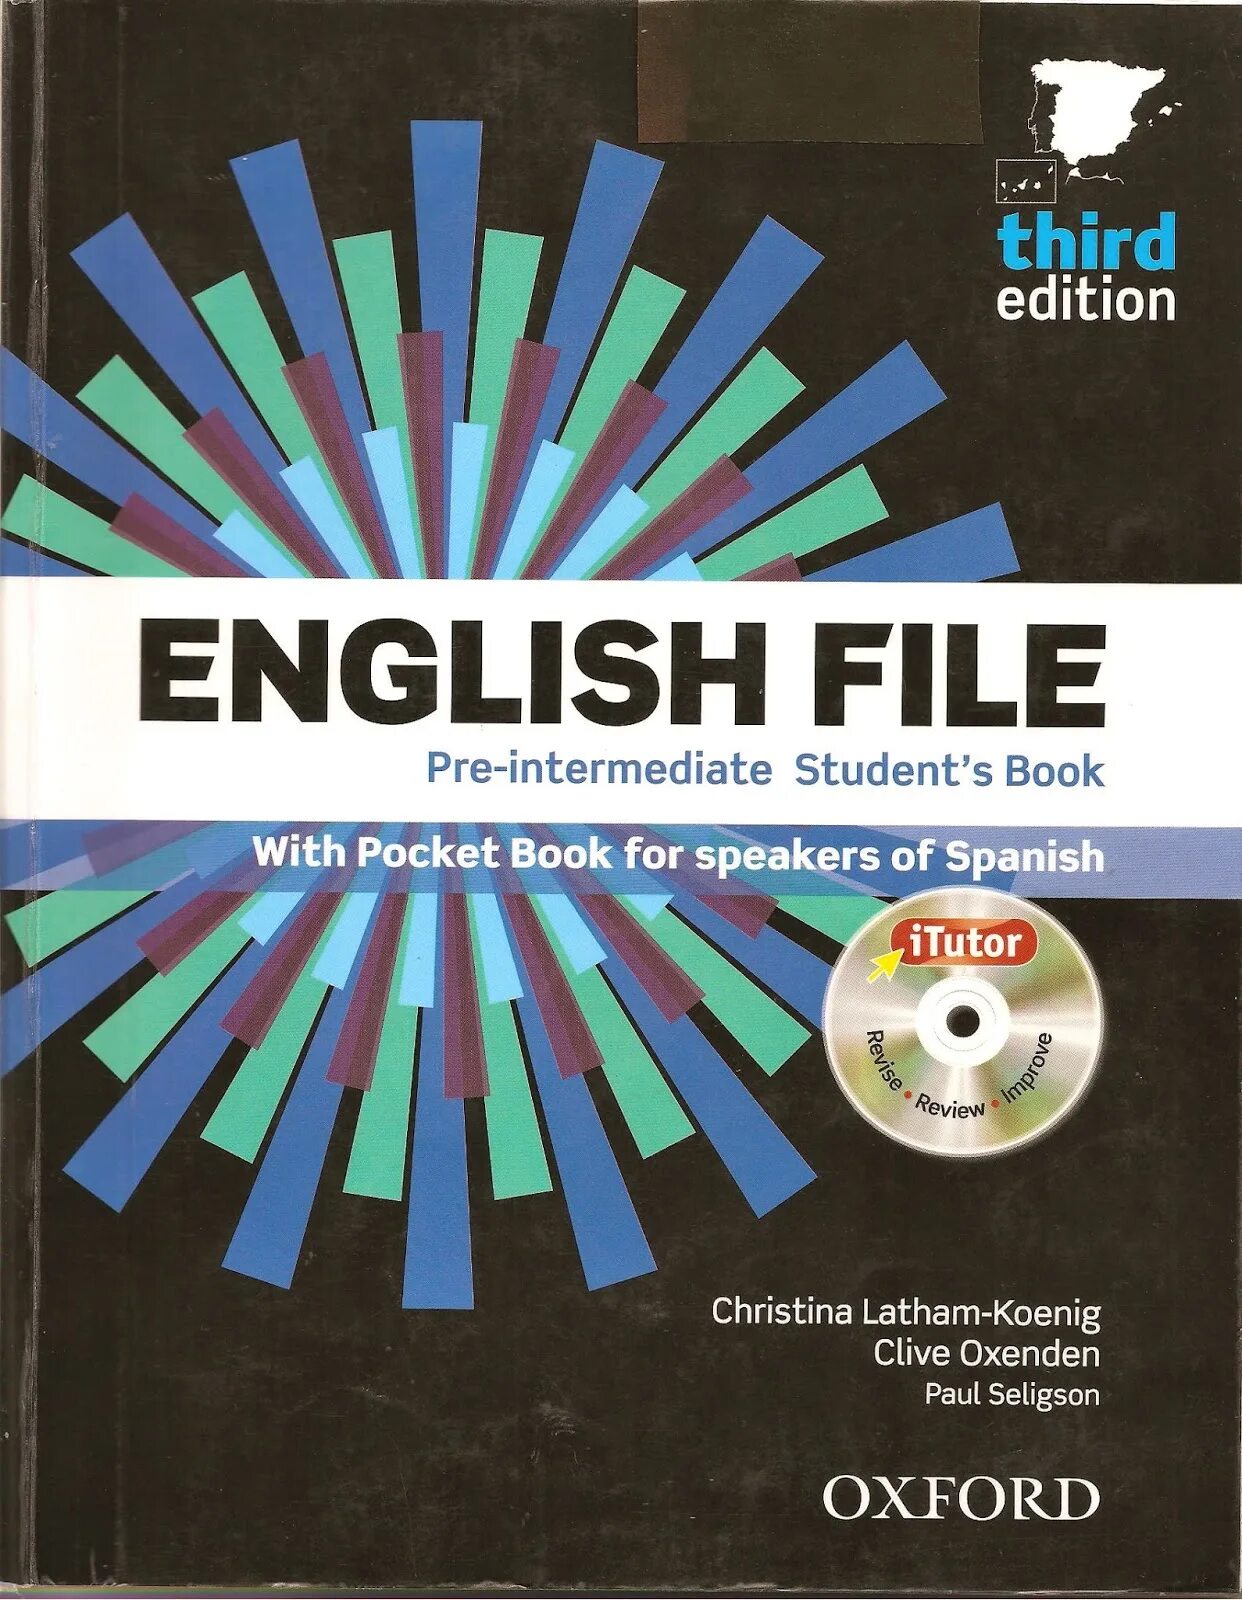 English file inter. EF pre Intermediate 3rd Edition. English file 3 издание pre-Intermediate. English file pre Intermediate 5 издание. English pre Intermediate 3rd Edition.